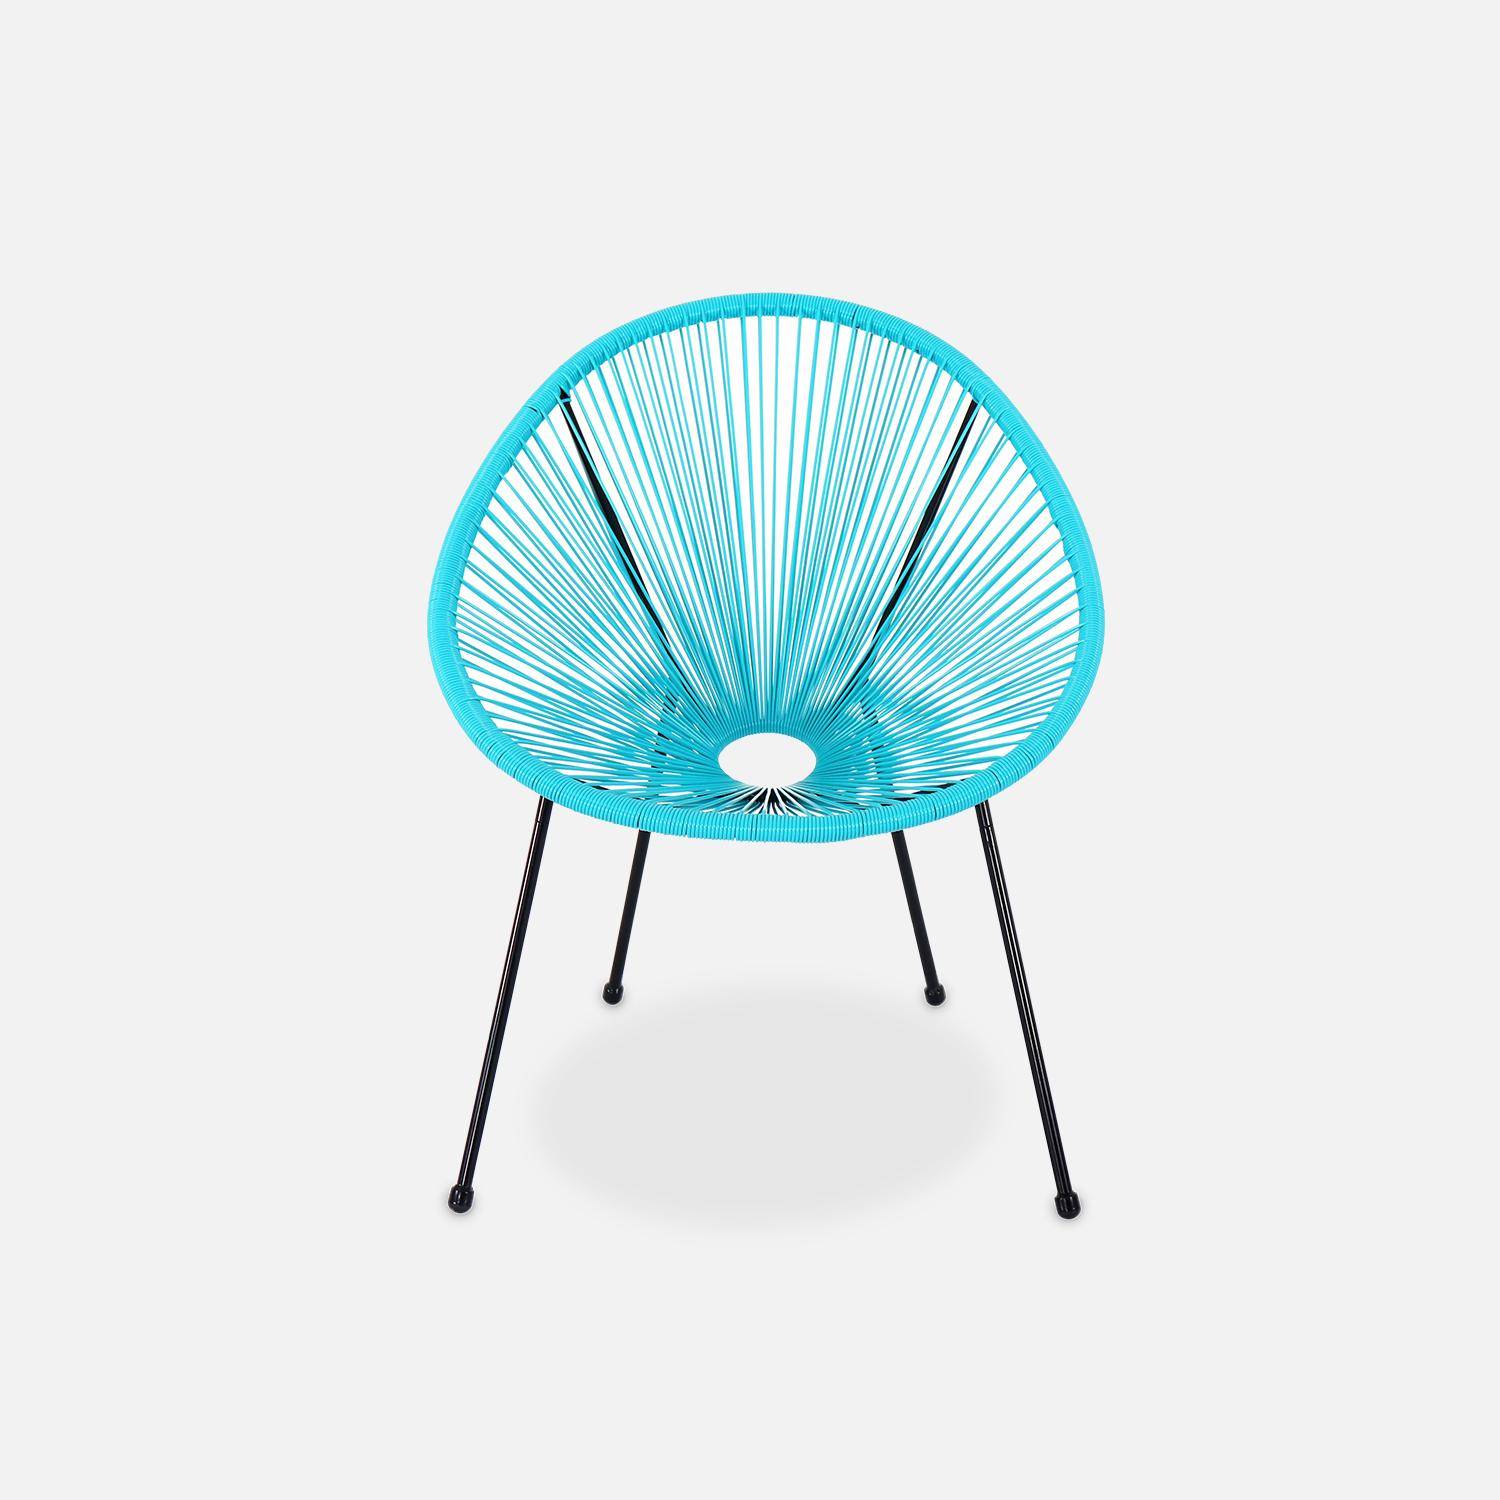 Lot de 2 fauteuils design Oeuf - Acapulco Turquoise - Fauteuils 4 pieds design rétro, cordage plastique, intérieur / extérieur Photo3